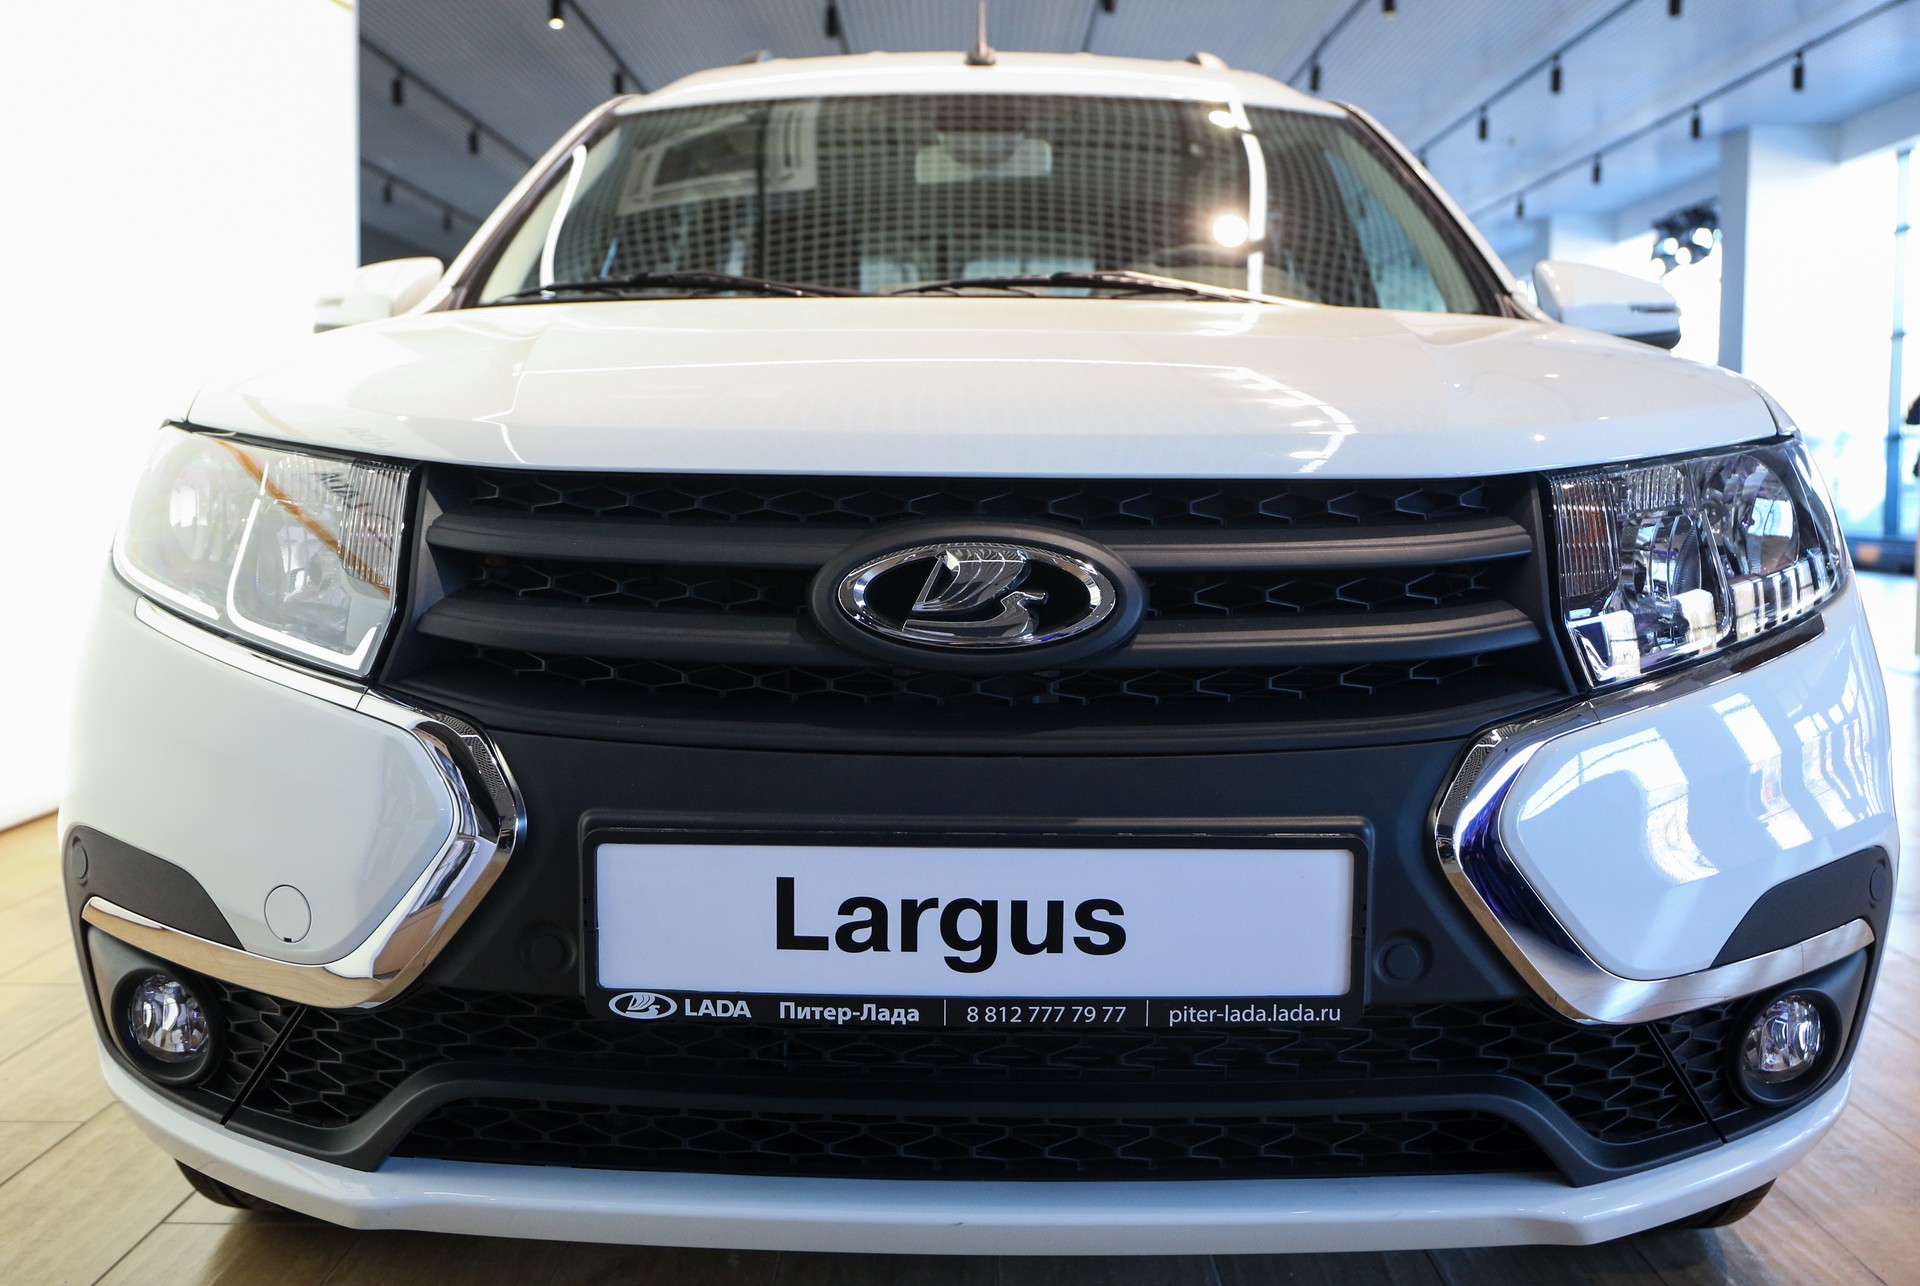 Автоэксперт рассказал, сколько будет стоить базовая версия новой Lada Largus